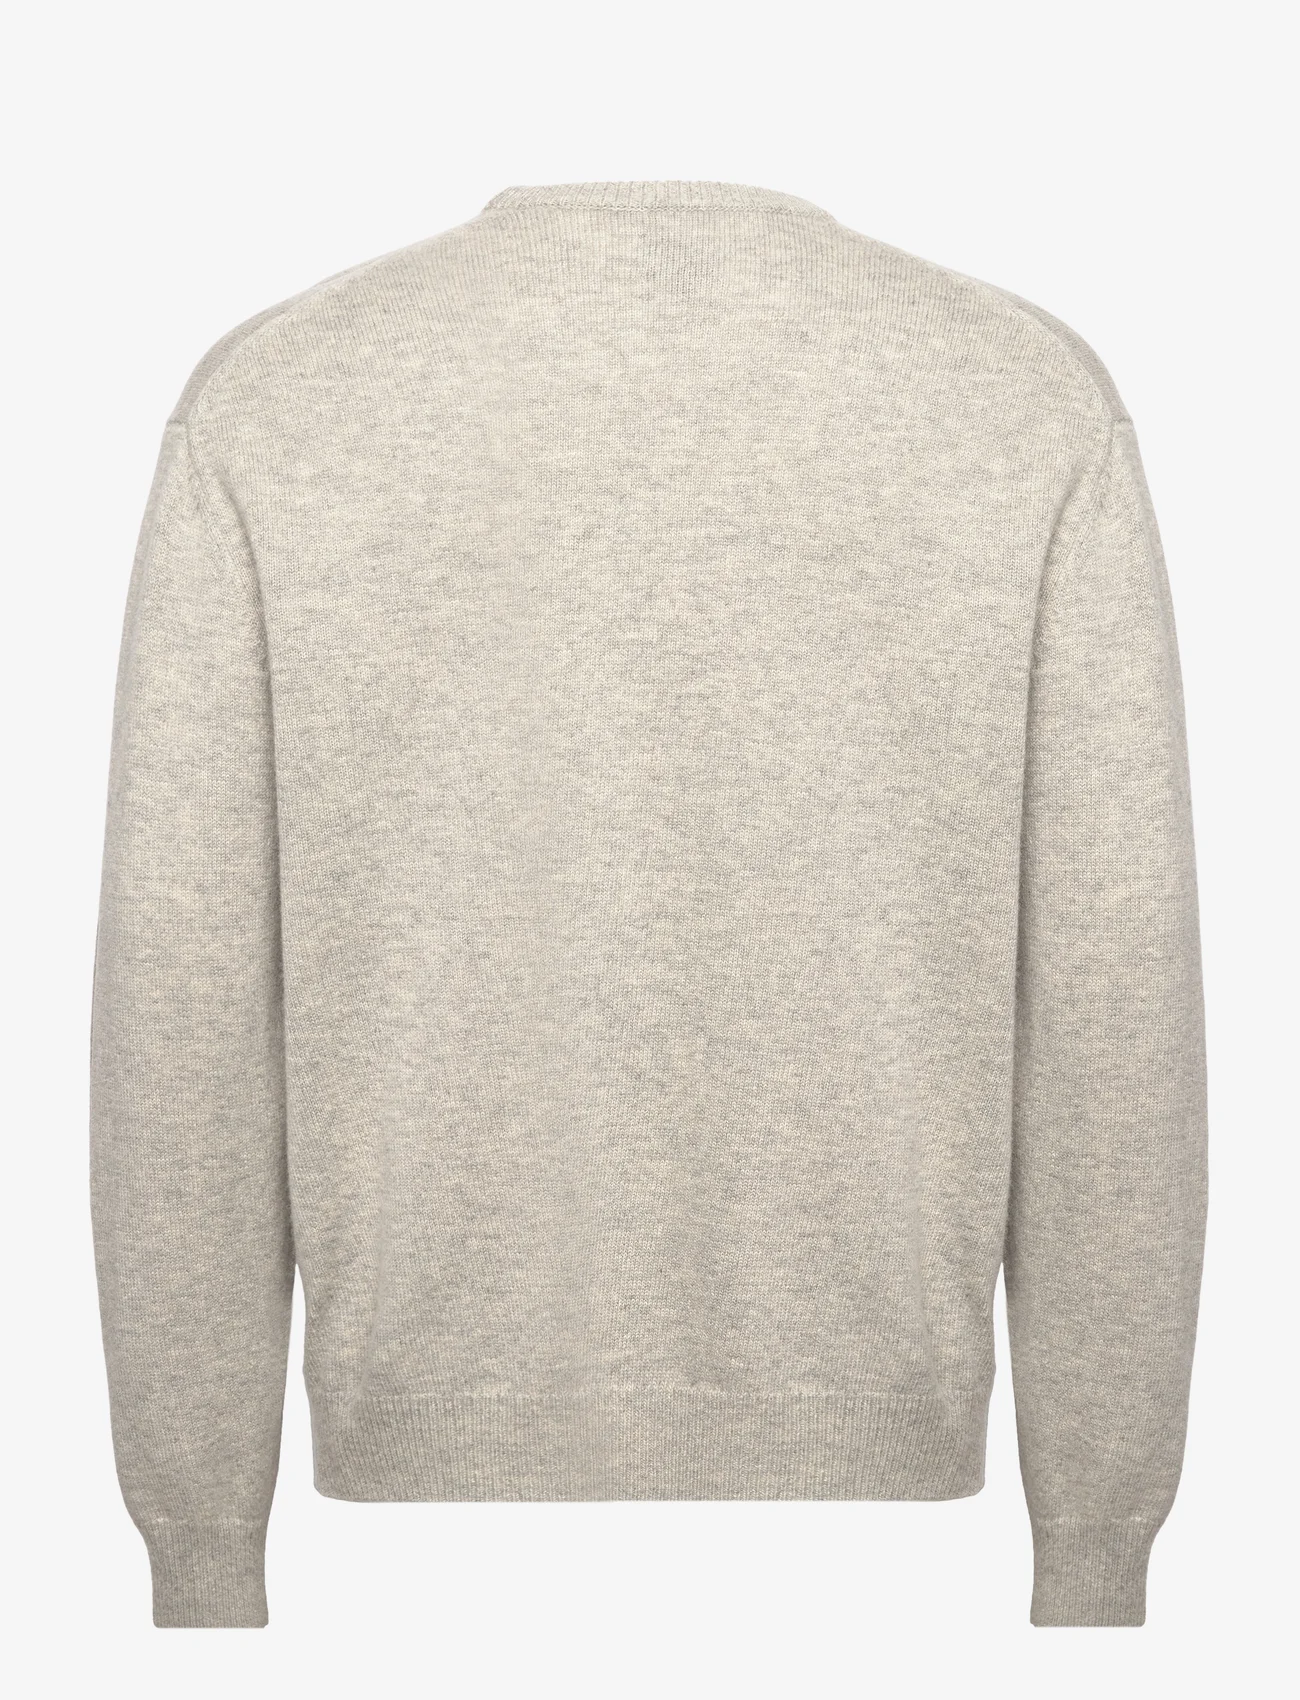 Tonsure - Philip knit crewneck - strik med rund hals - light grey melange - 1